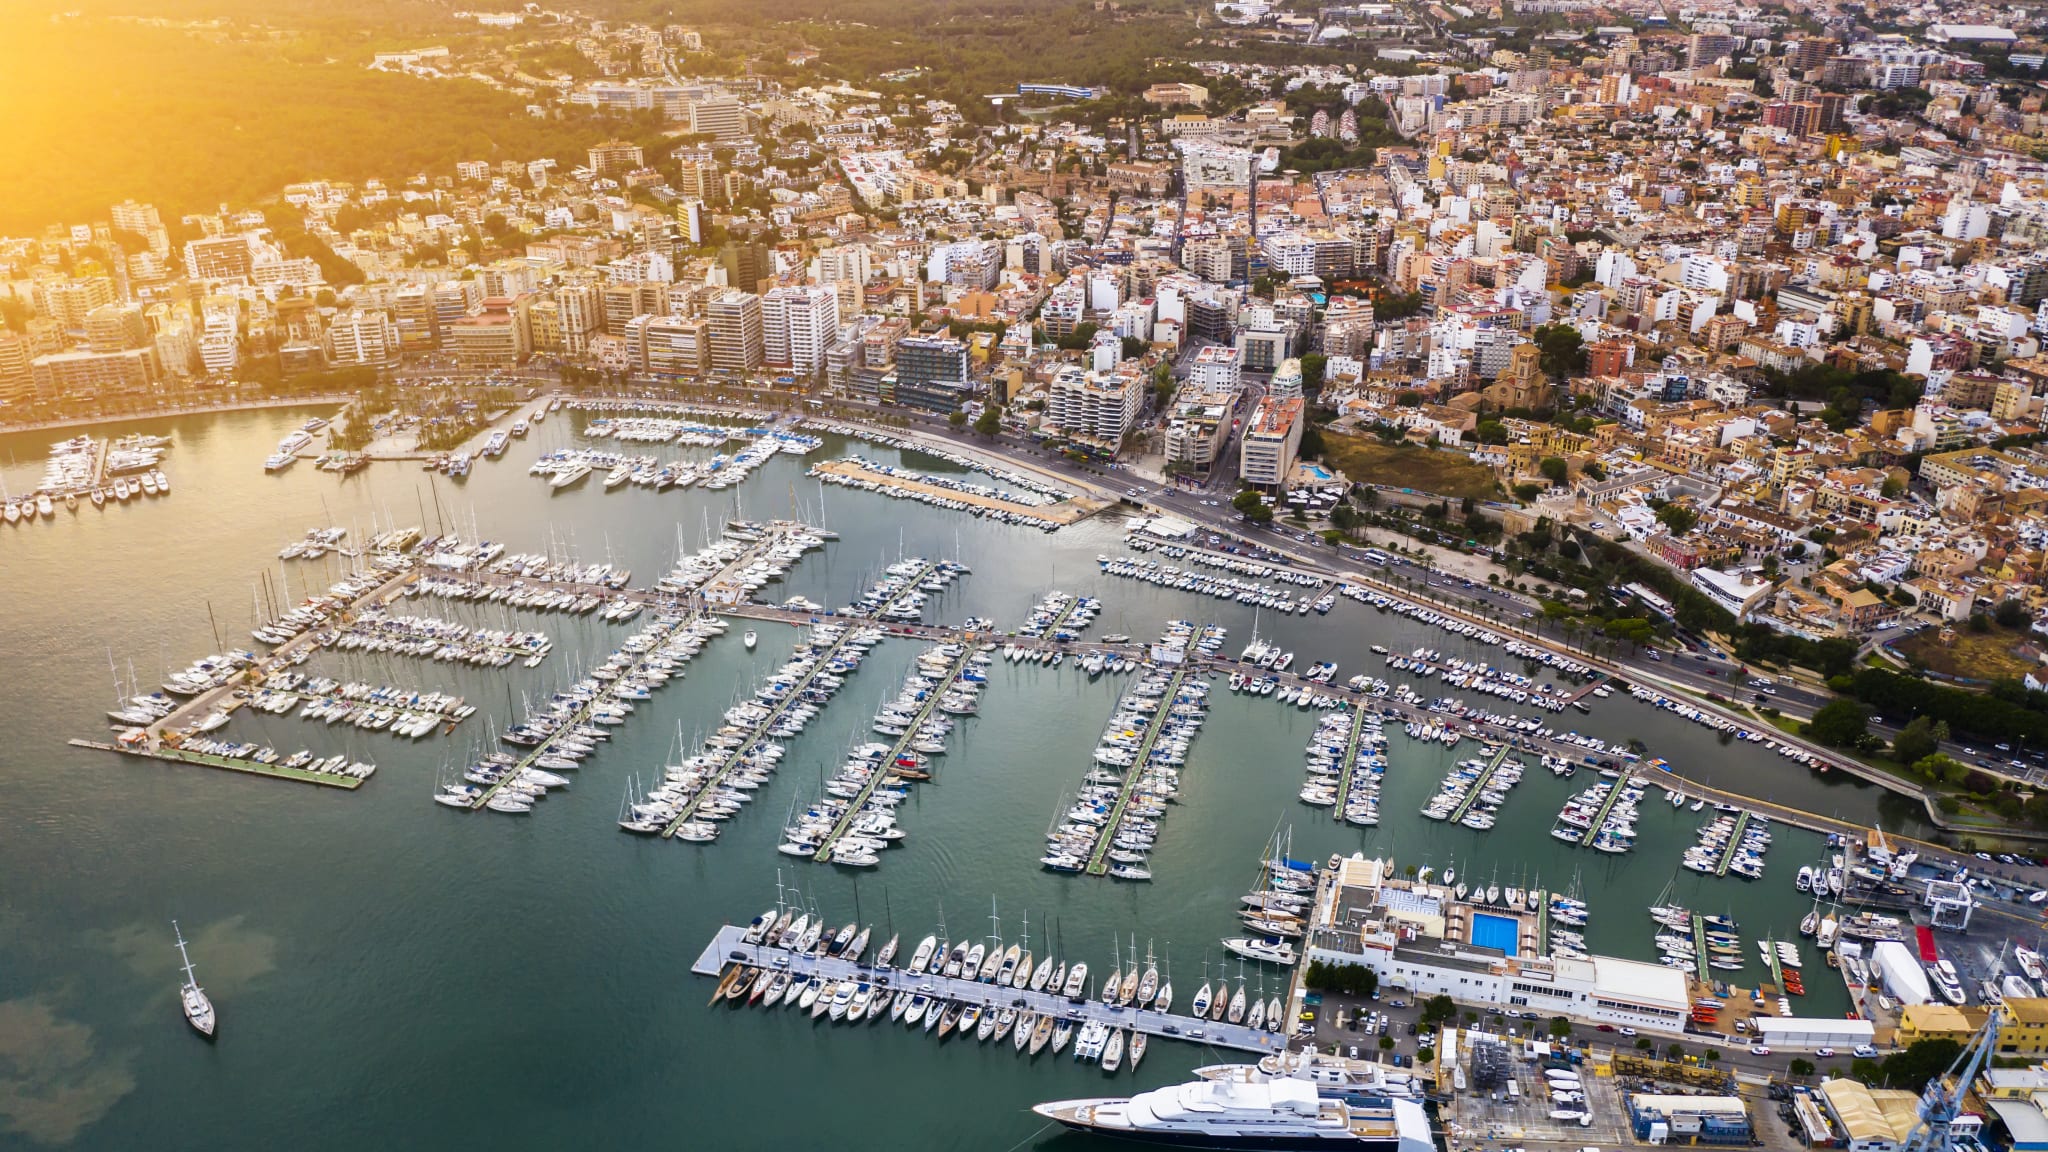 Hafen, Palma de Mallorca, Spanien